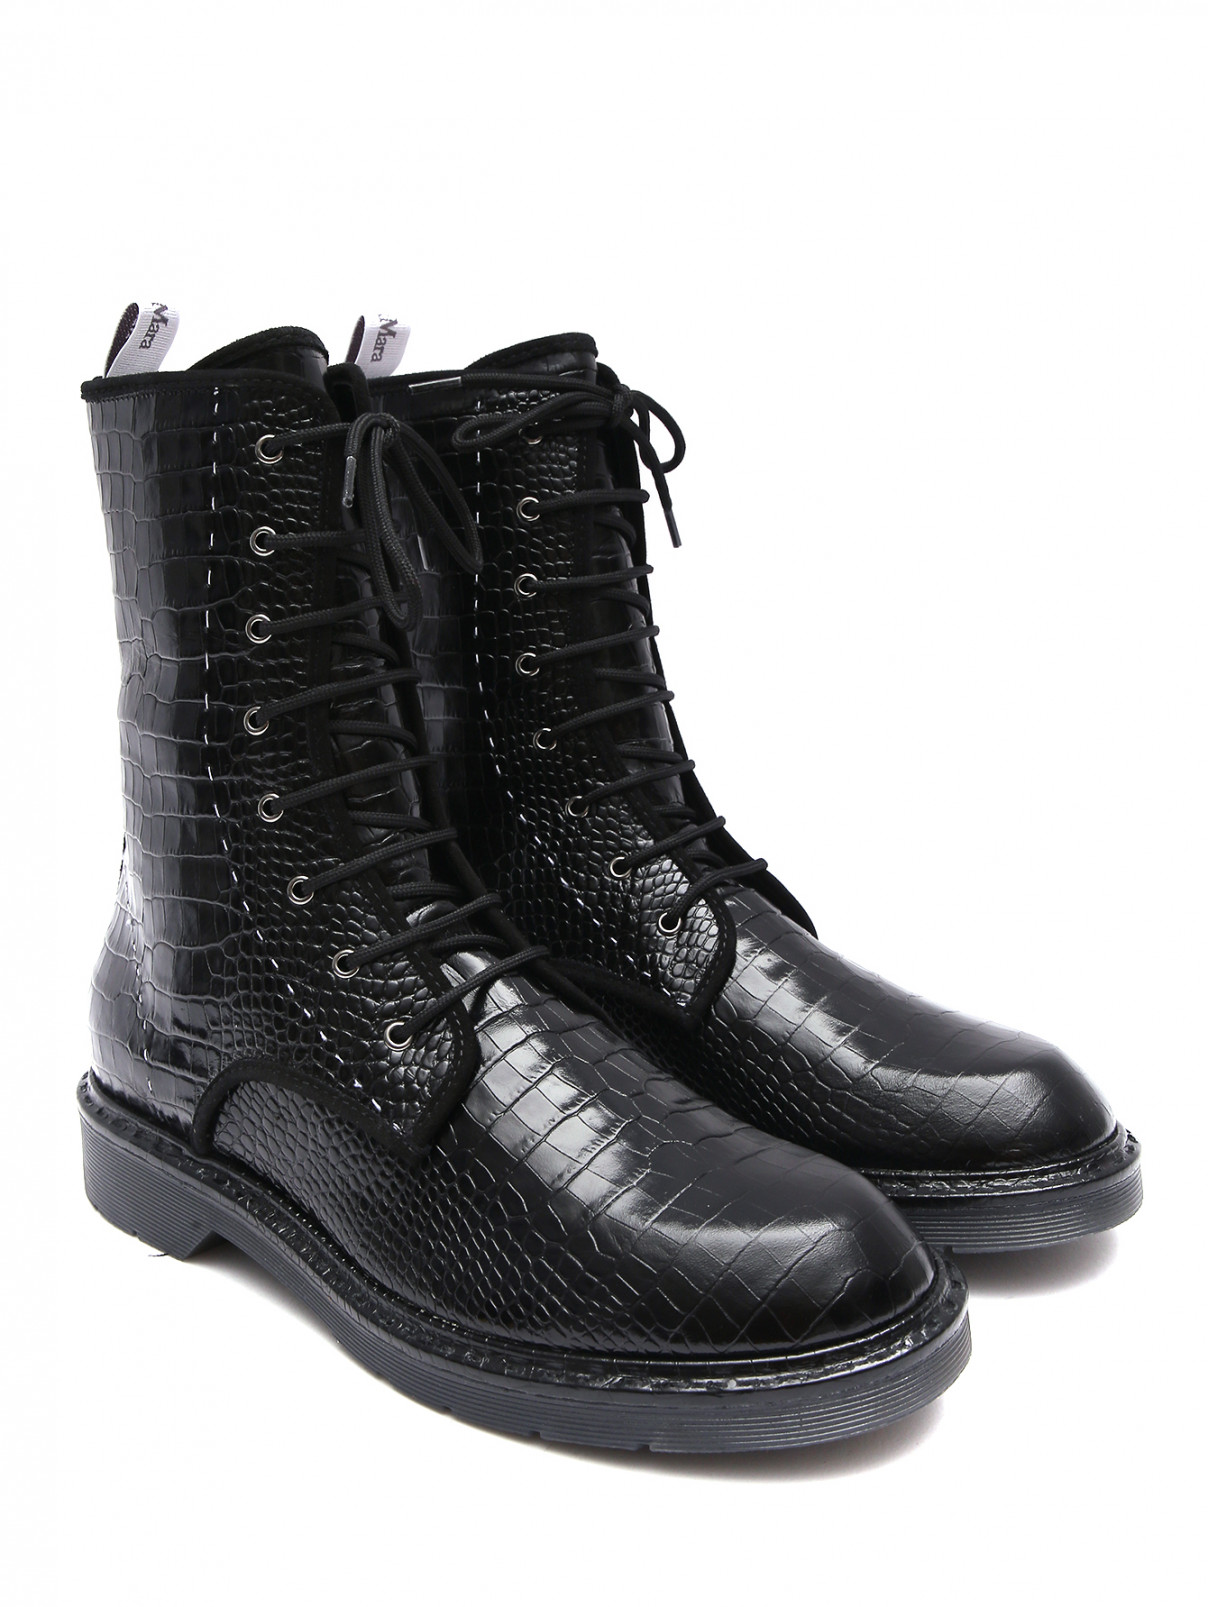 Высокие ботинки из фактурной кожи на шнурках Max Mara  –  Общий вид  – Цвет:  Черный